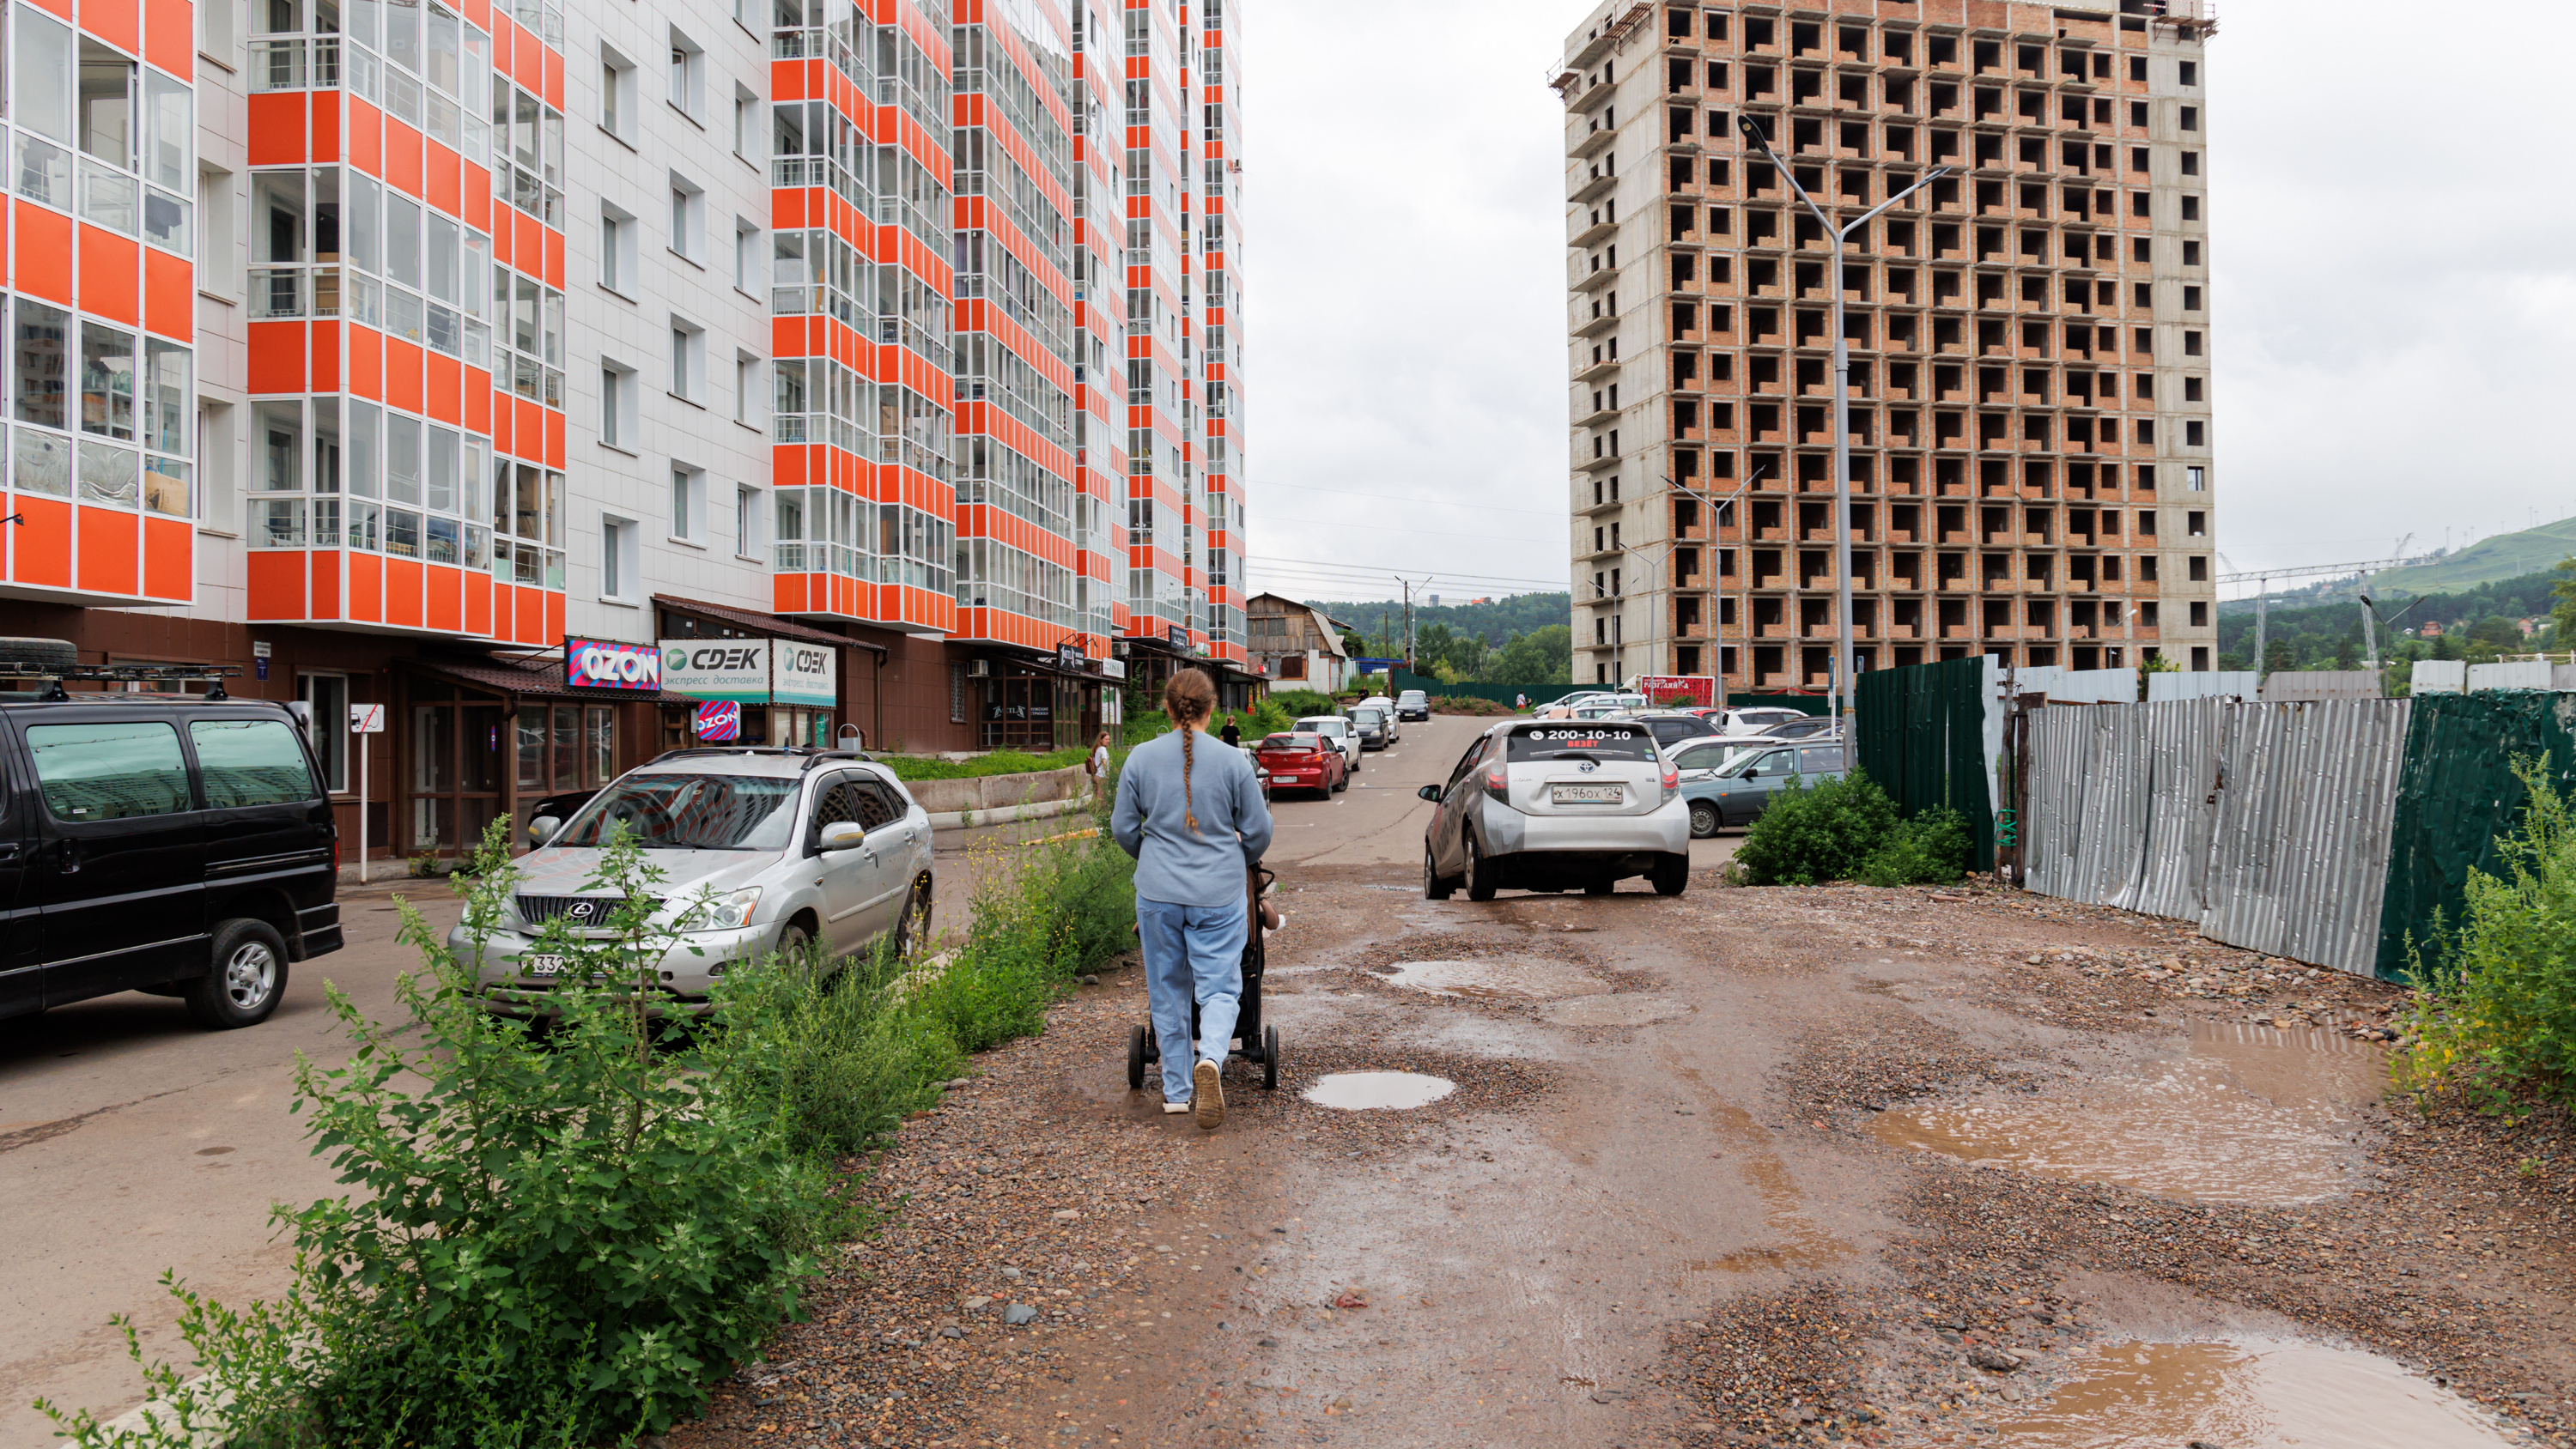 «Экономия и жадность застройщиков»: таксист назвал самые проблемные дворы Красноярска, откуда тяжело выехать